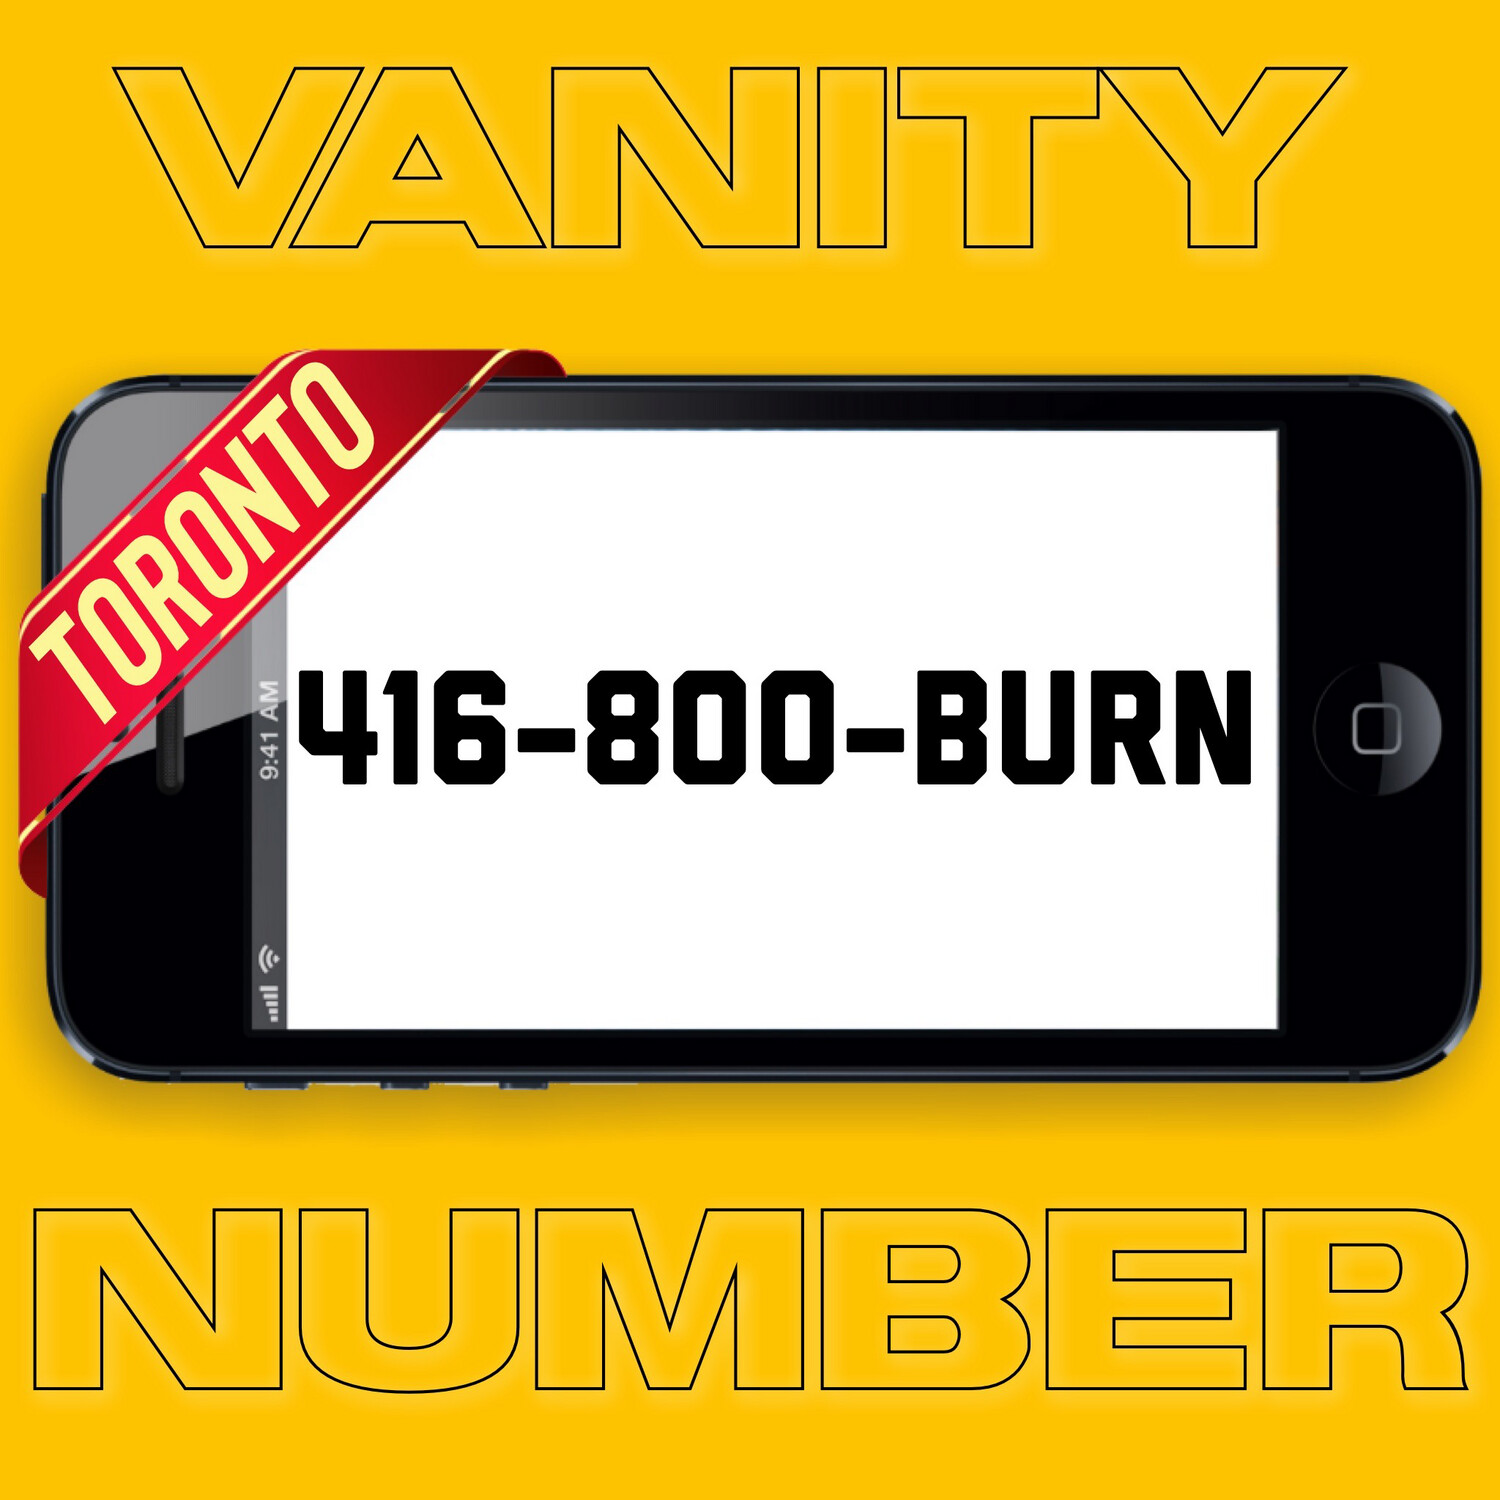 416-800-BURN VANITY NUMBER TORONTO